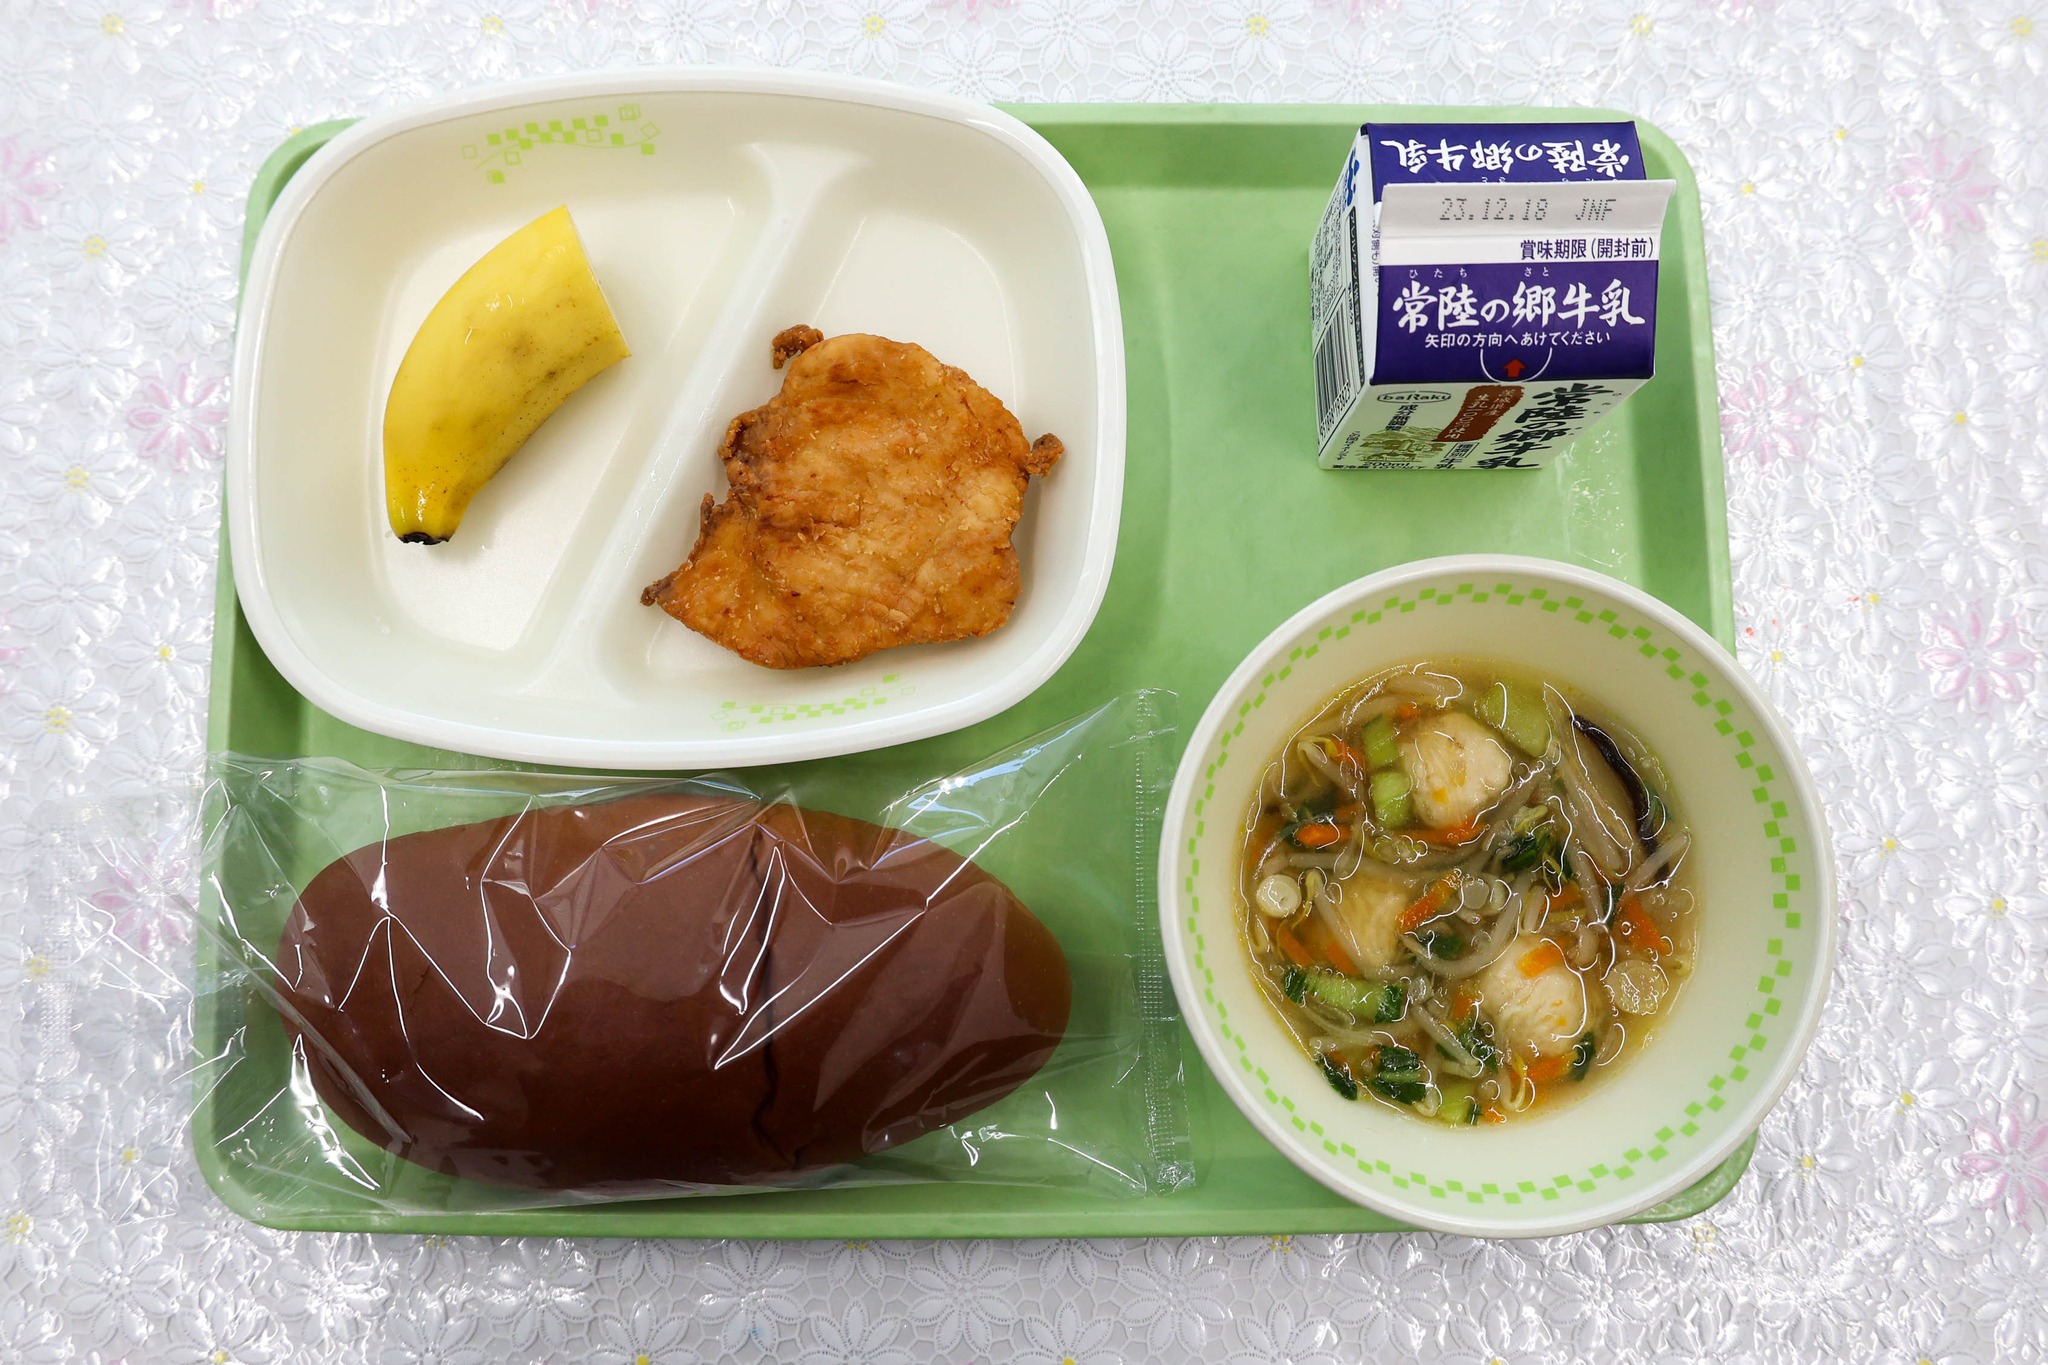 台湾メニューの給食をいただきました!page-visual 台湾メニューの給食をいただきました!ビジュアル